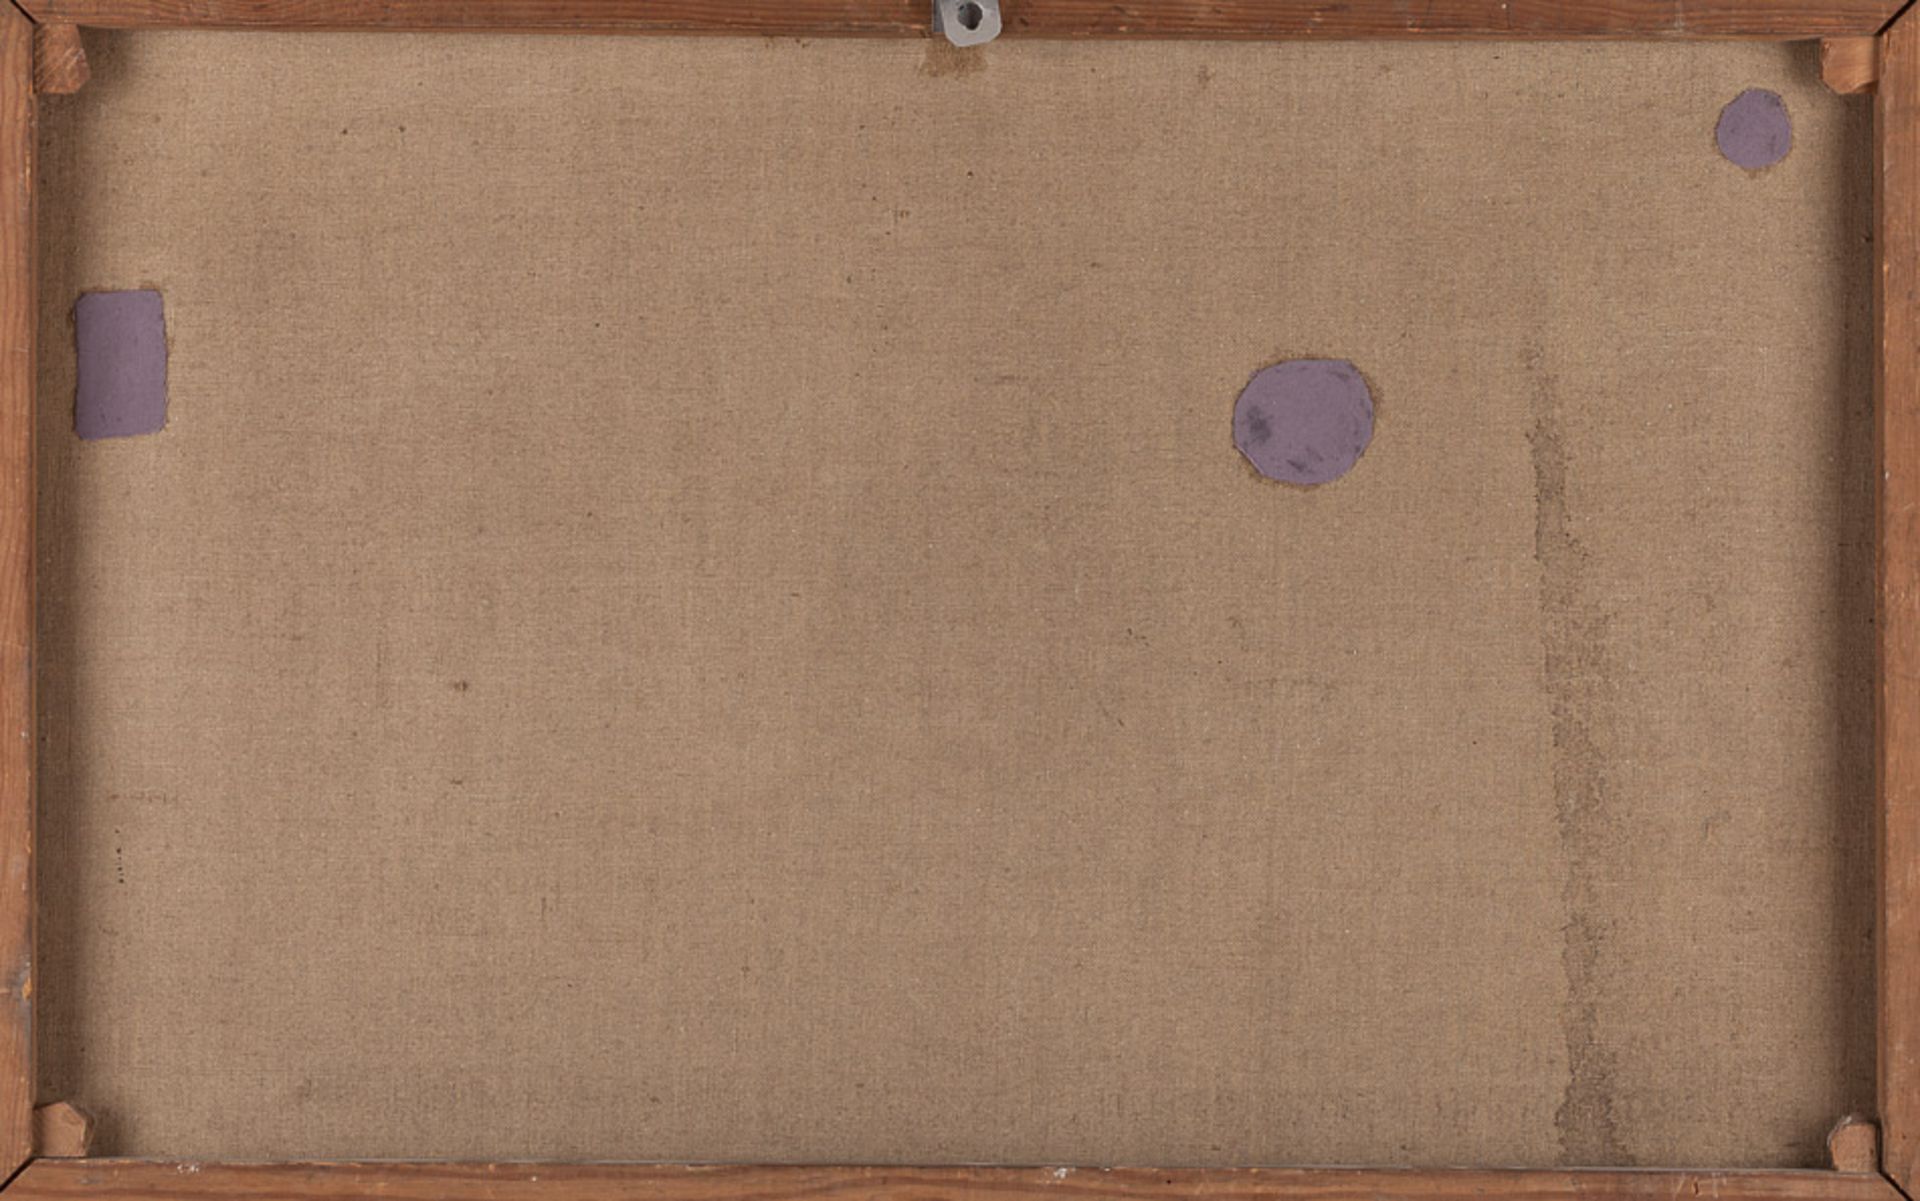 M.Mensch 20. Jhd"Tafelstillleben"
Gemälde Öl/Leinwand, 50 cm x 75,5 cm,
rechts unten signiert - Image 3 of 3